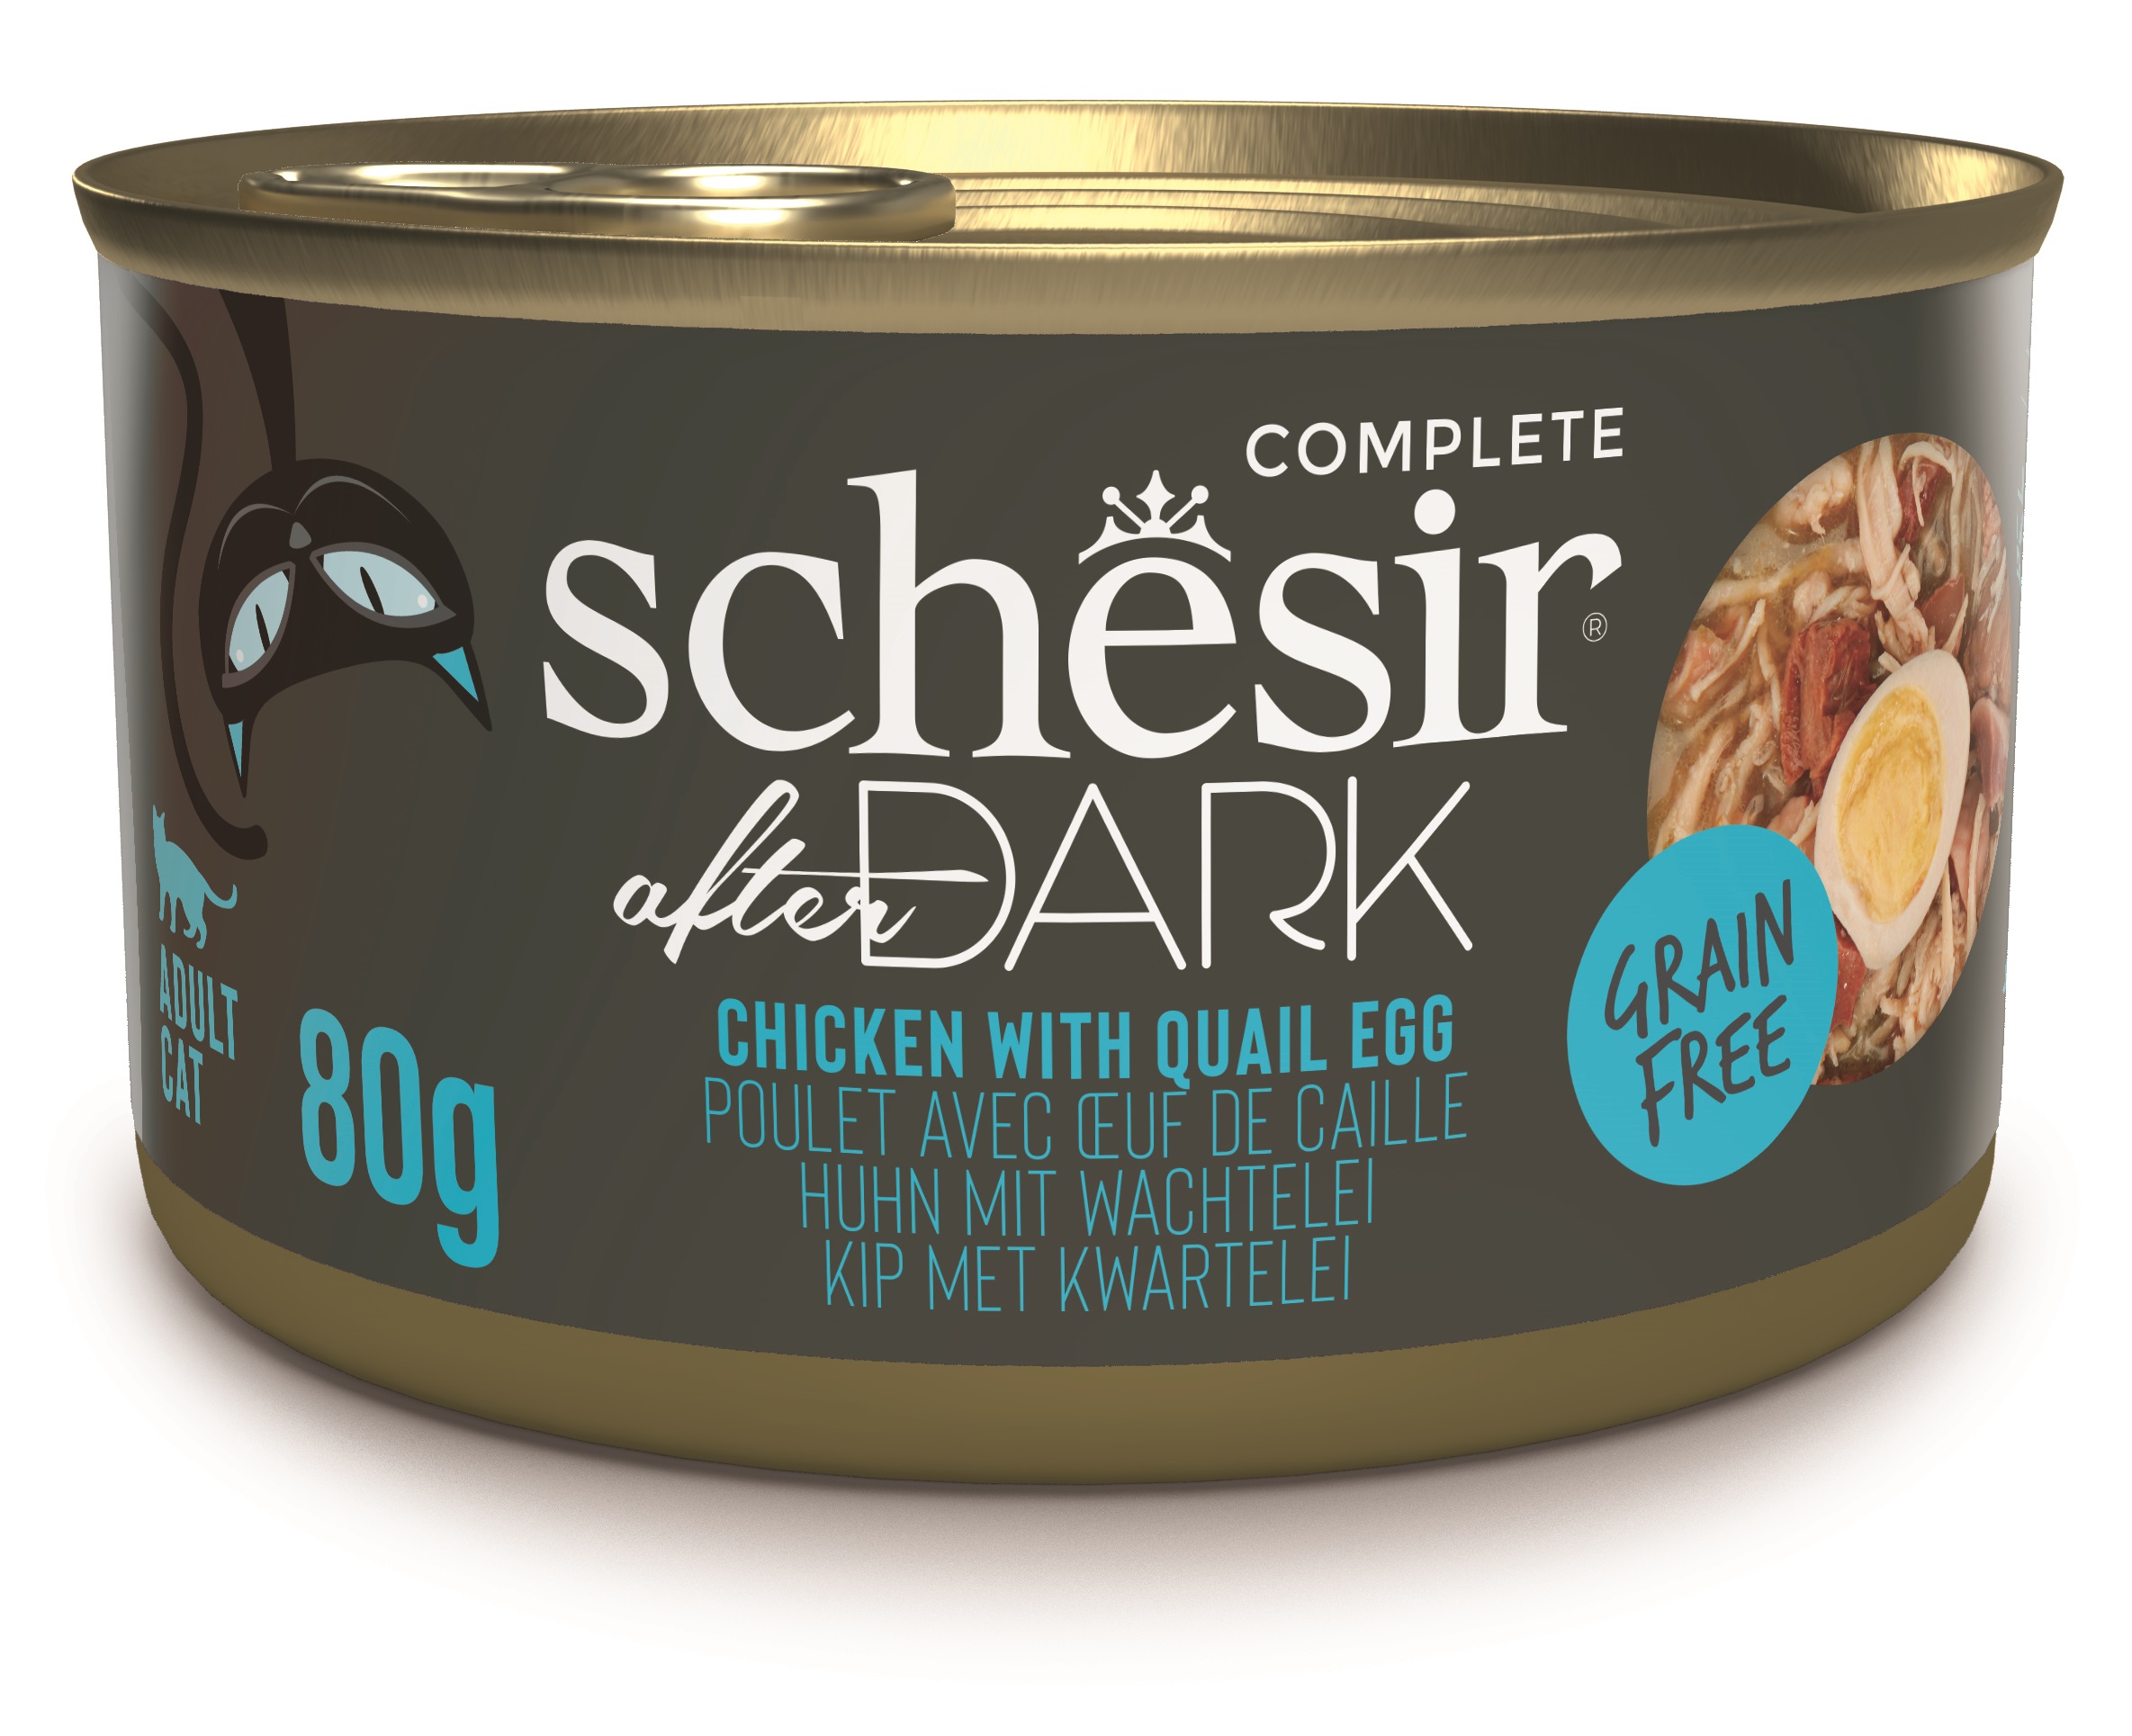 Schesir After Dark kuře a křepelčí vejce - konzerva pro kočky 80 g